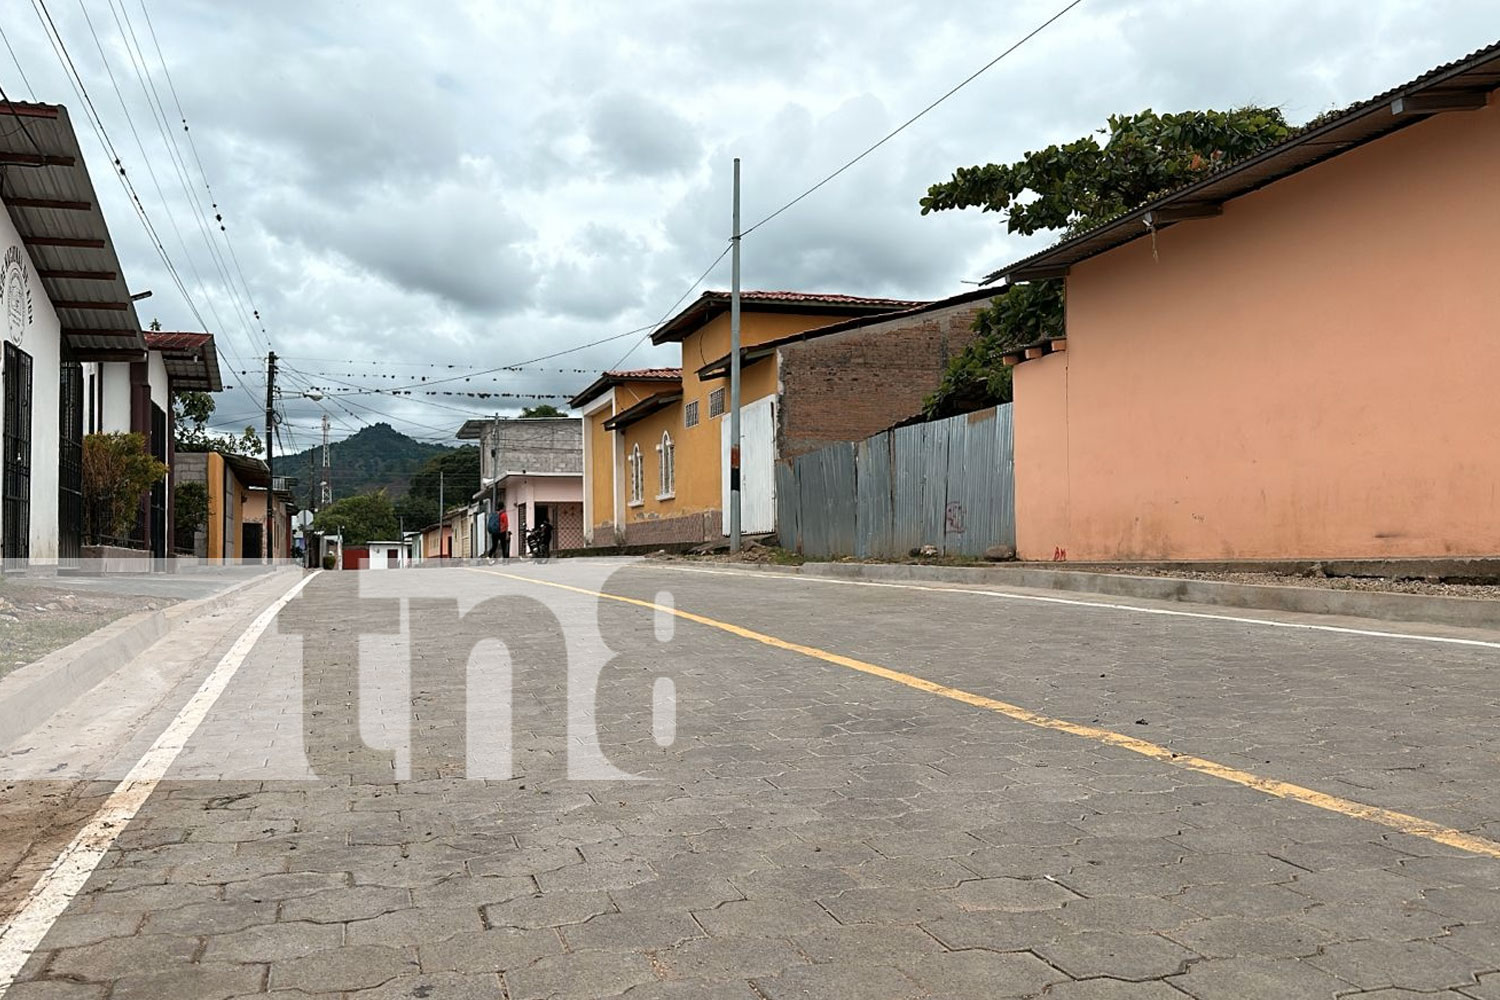 Foto: Más de 13 millones de córdobas invertidos en infraestructura urbana de Jalapa/TN8